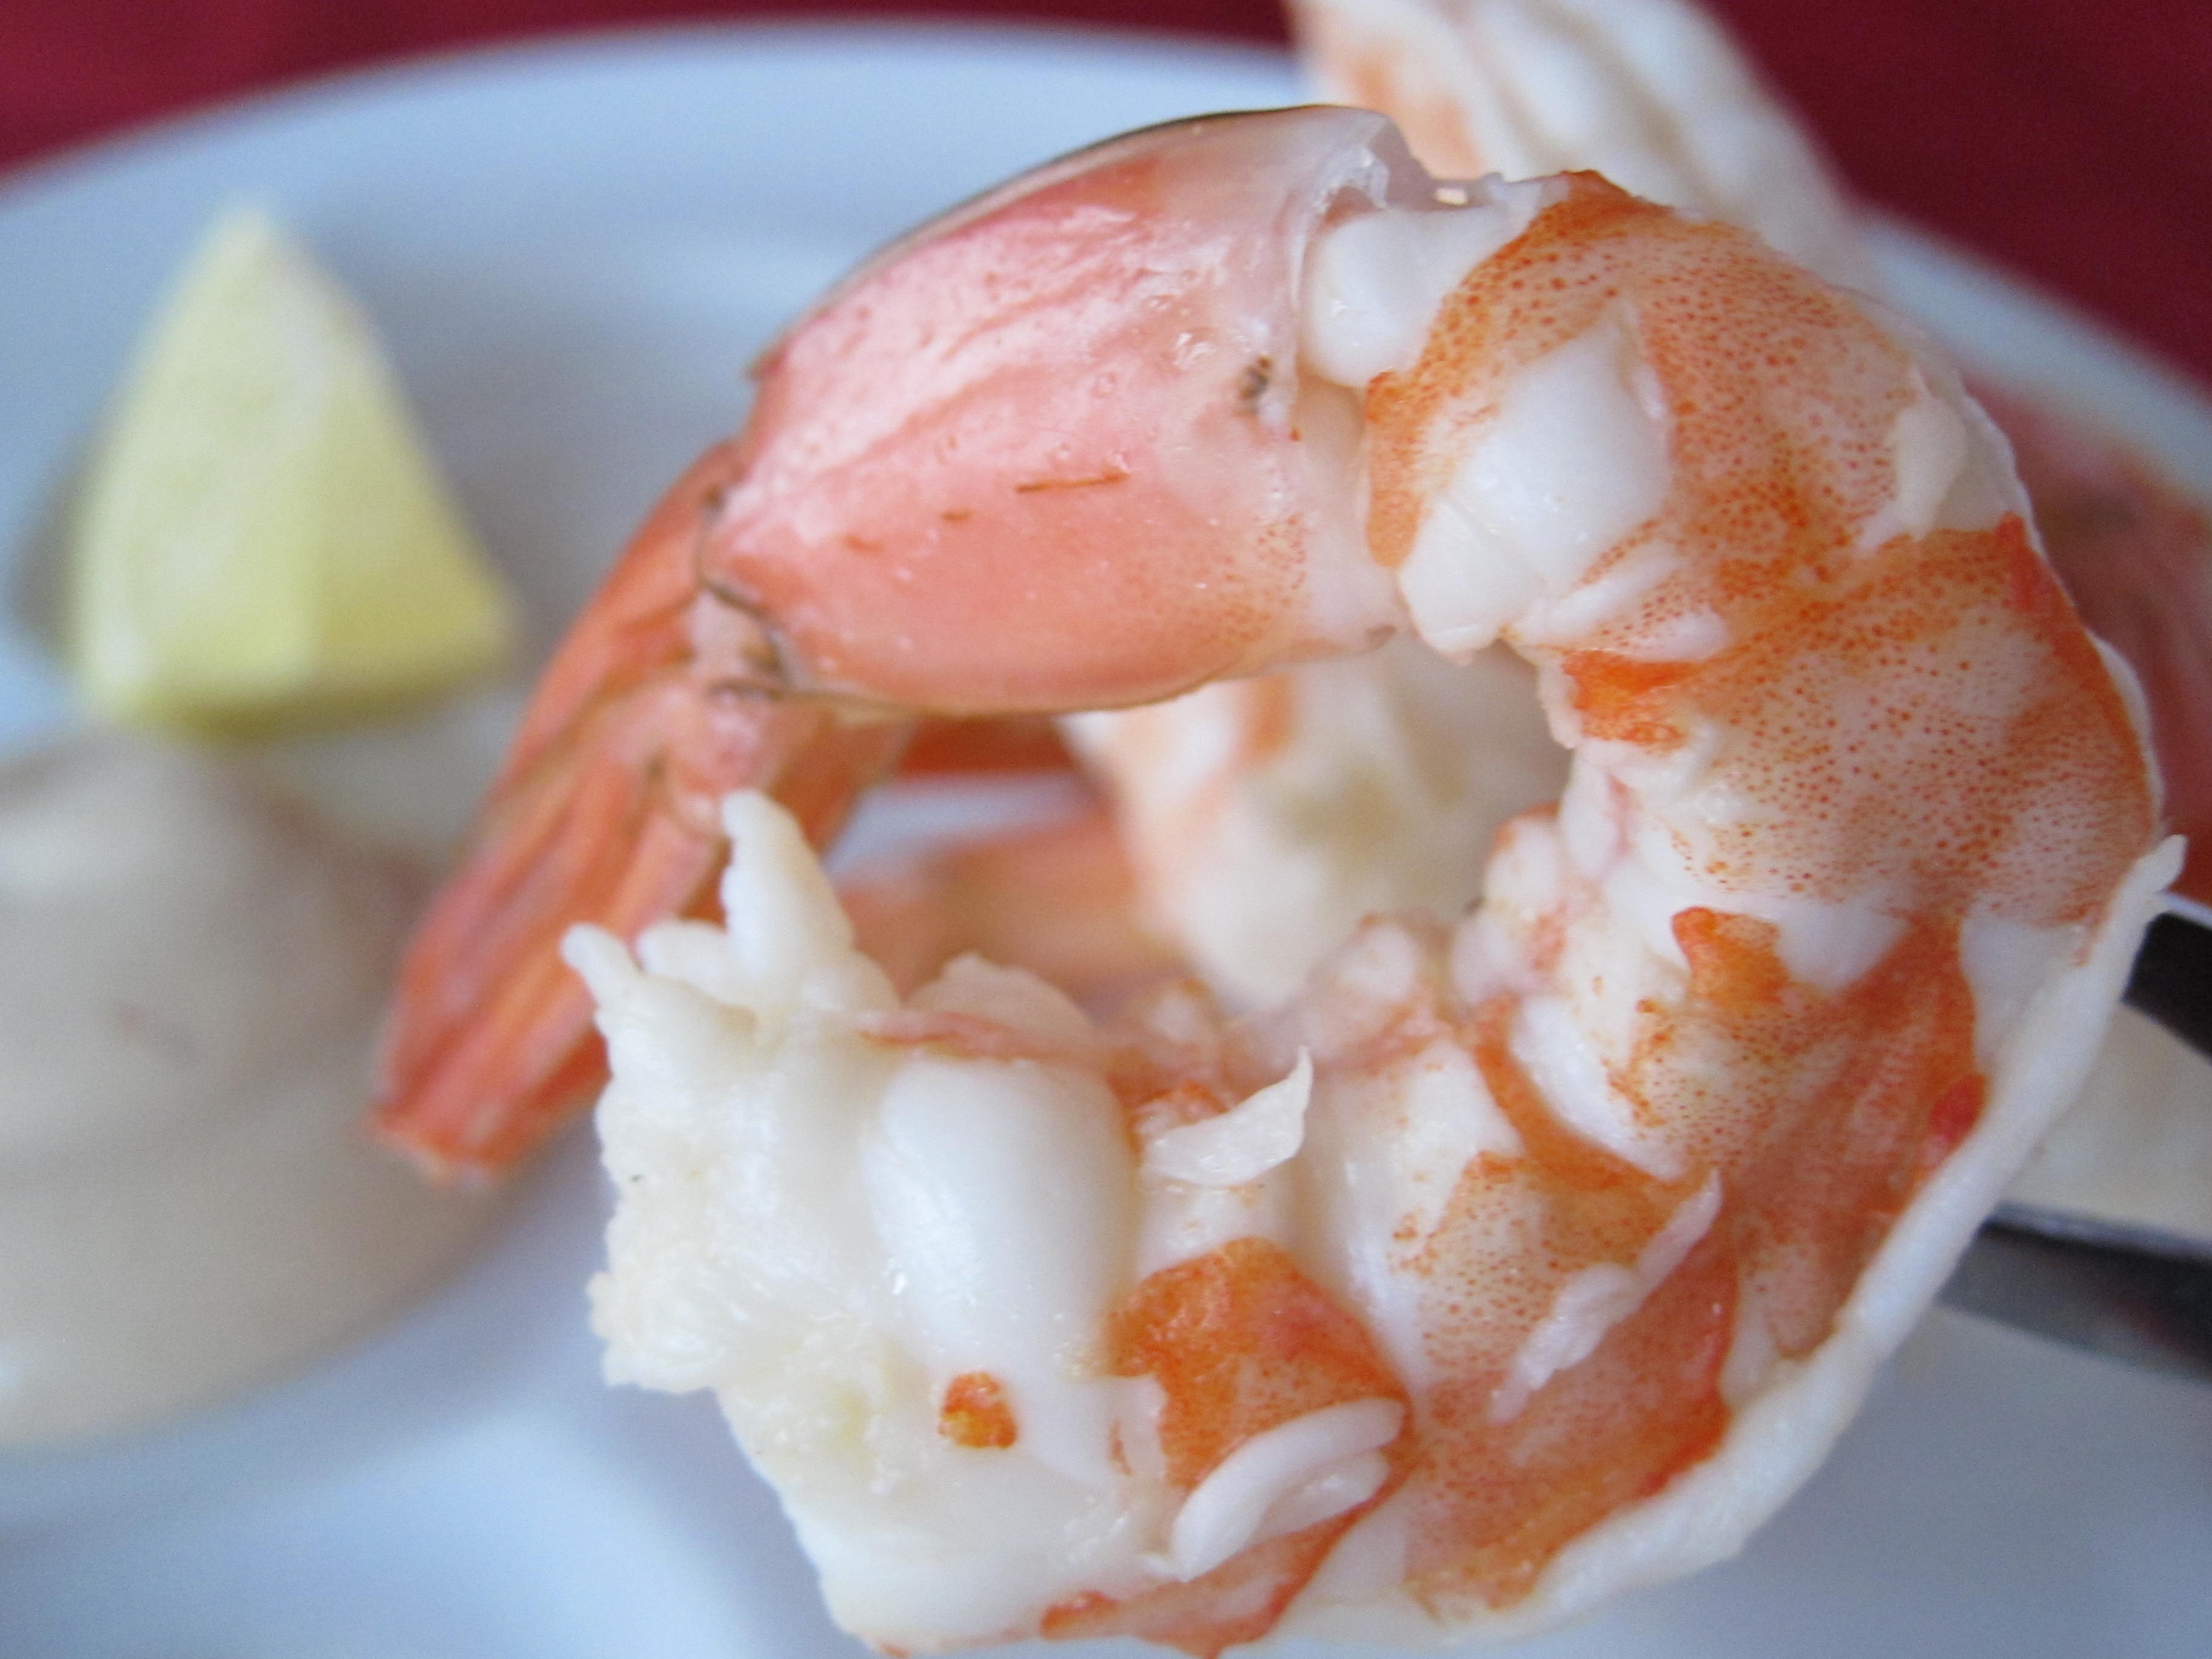 https://www.michelledudash.com/wp-content/uploads/2011/12/Photo-Court-Bouillon-Poached-Shrimp1.jpg